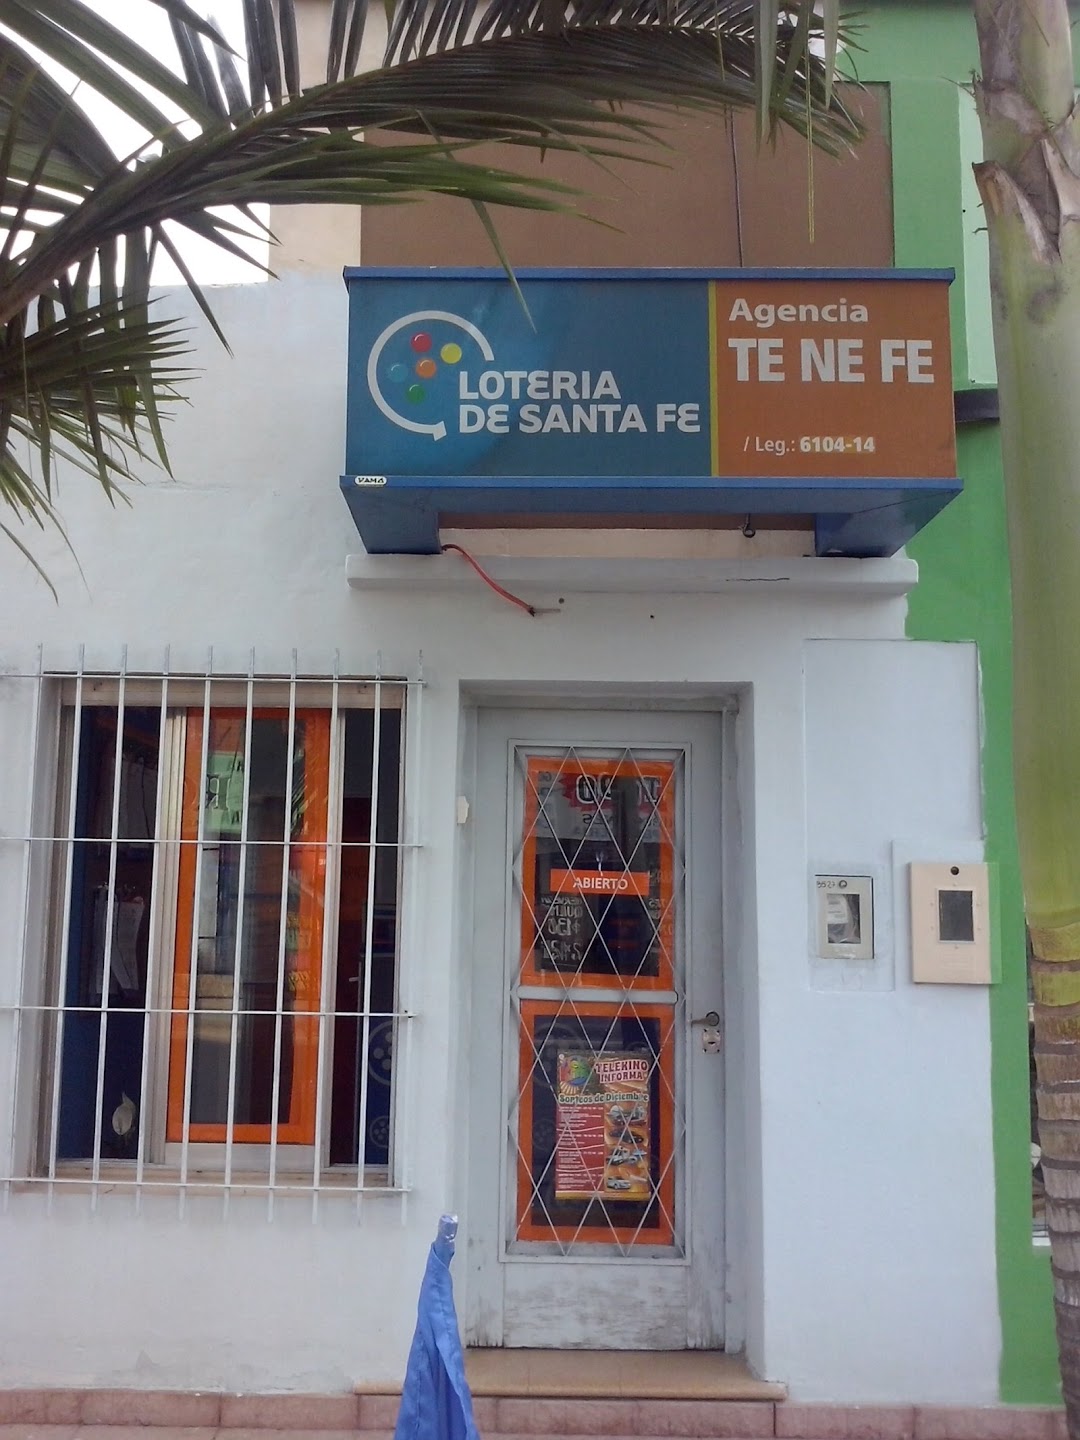 Agencia Oficial de Lotería de Santa Fe Te Ne Fe